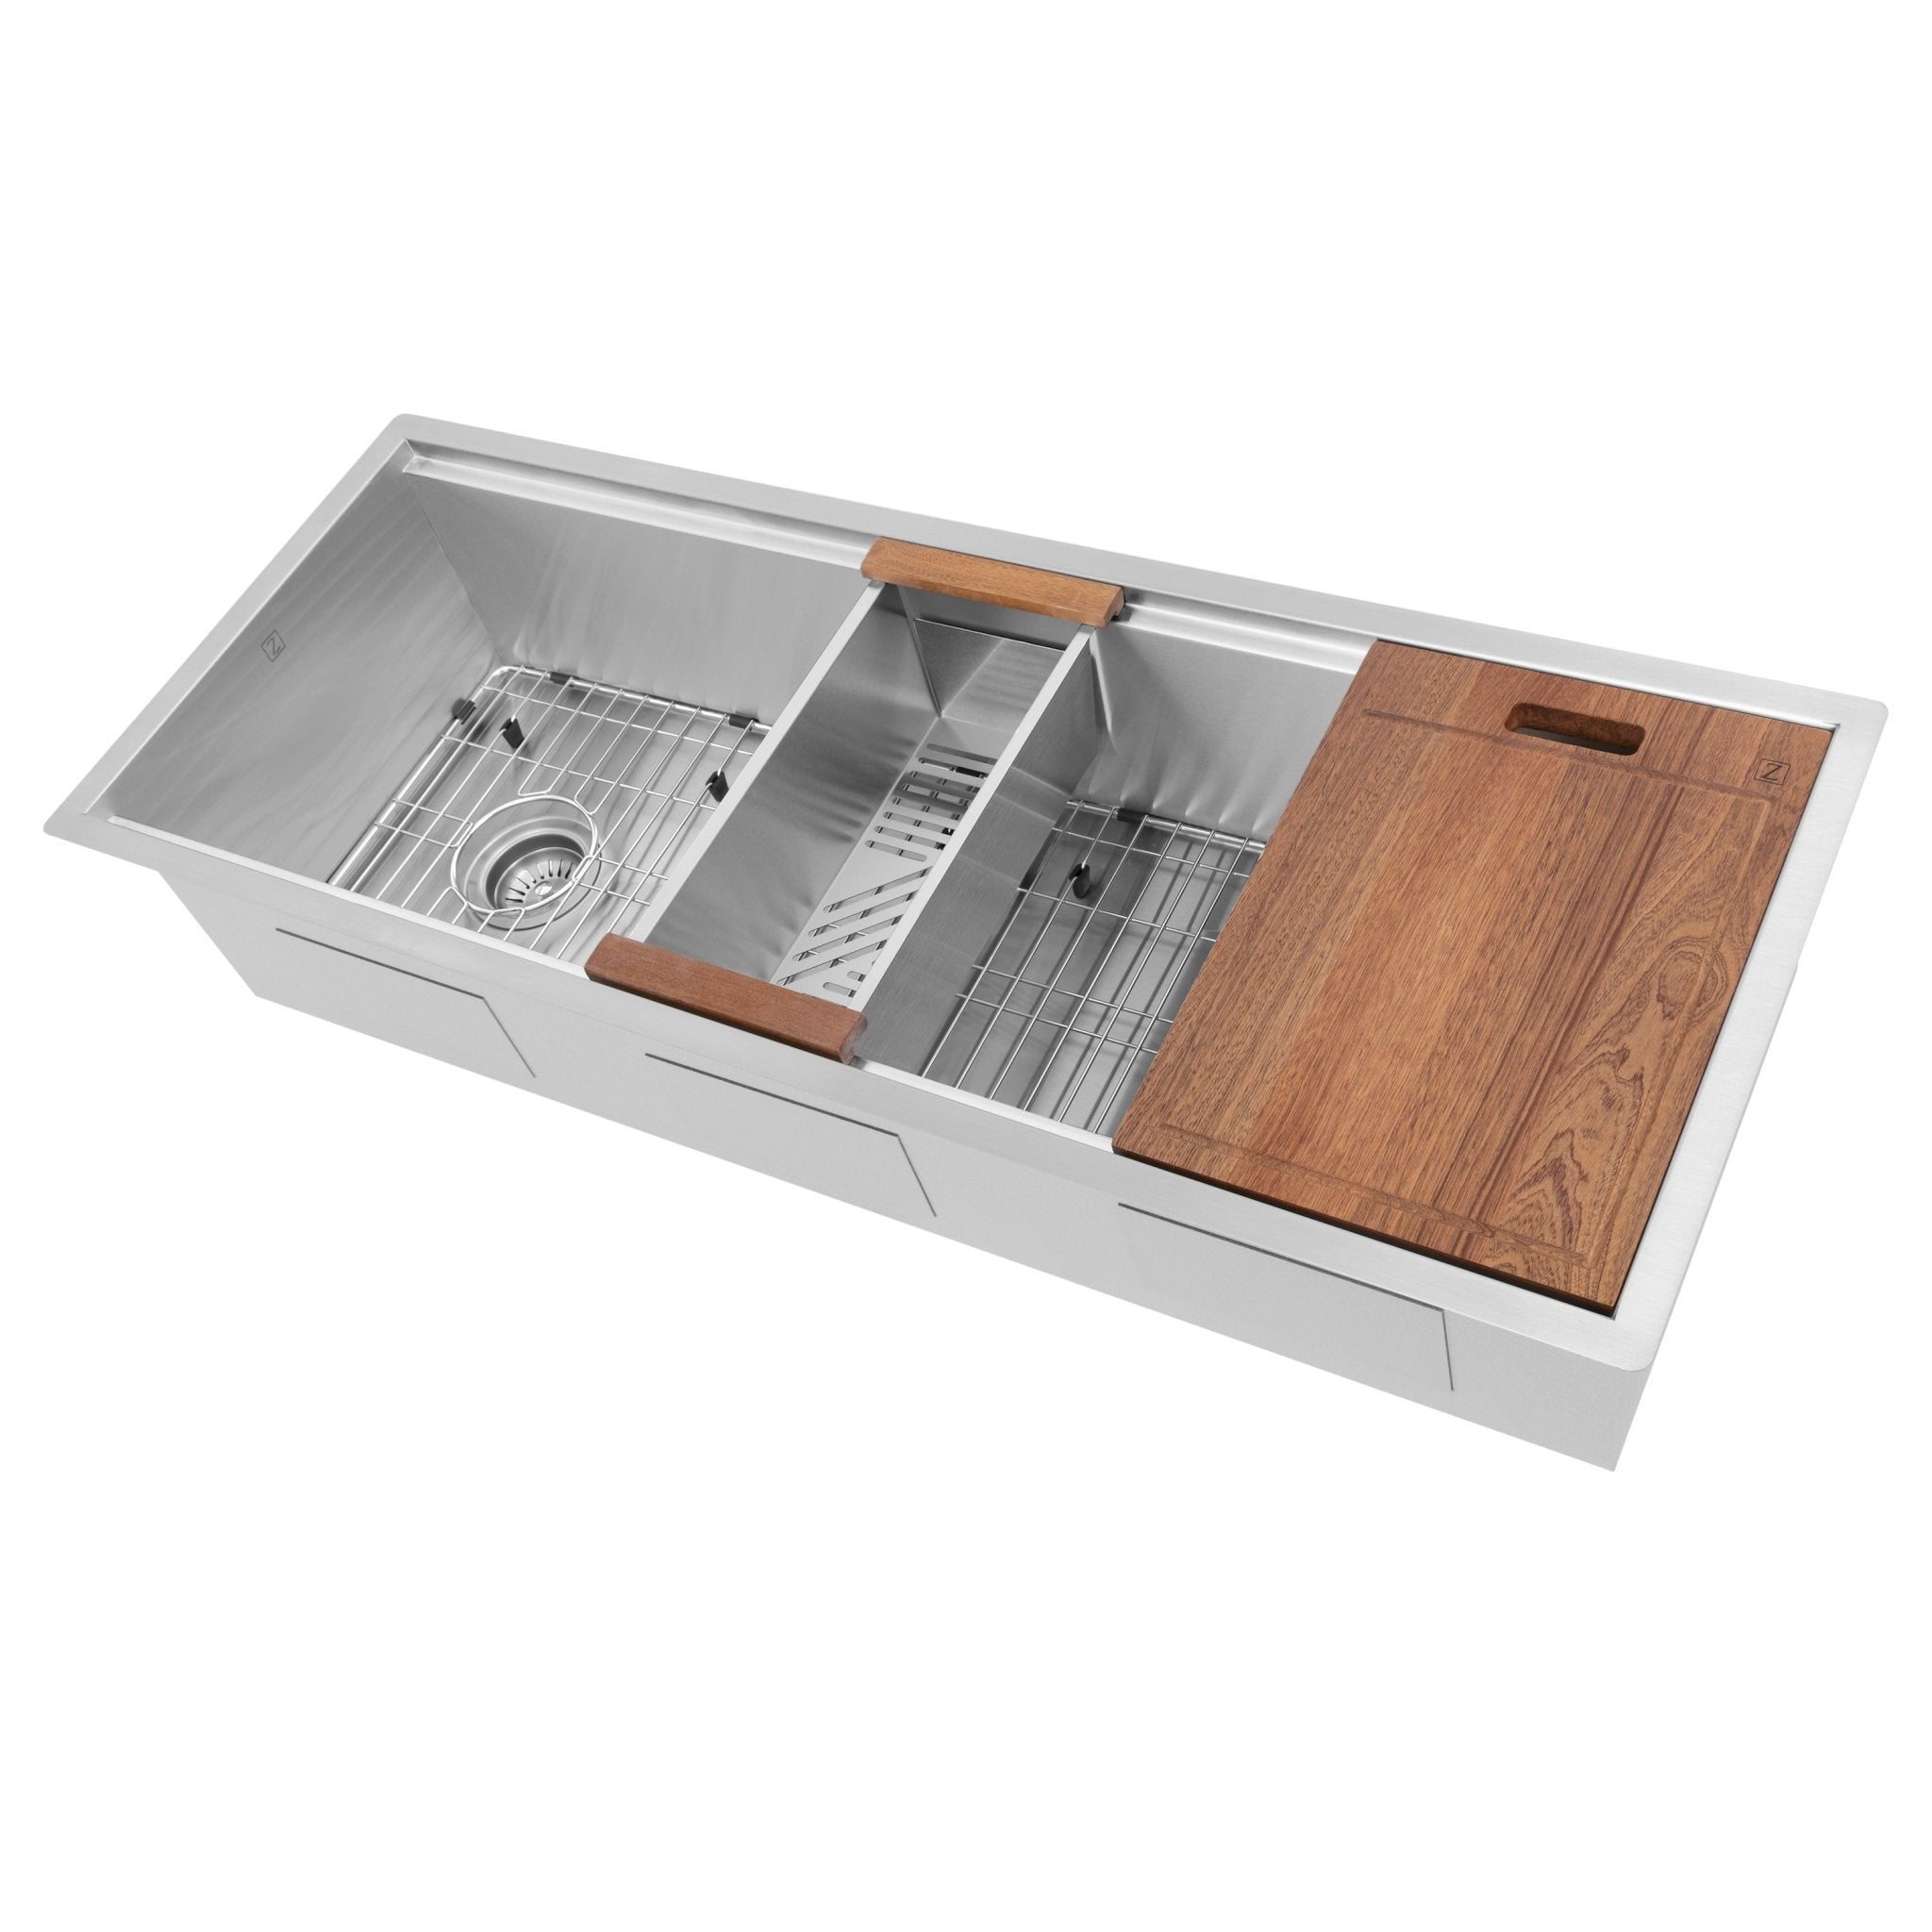 ZLINE Garmisch 43 Inch Undermount Single Bowl Sink with Accessories (SLS-43) - Rustic Kitchen & Bath - Rustic Kitchen & Bath